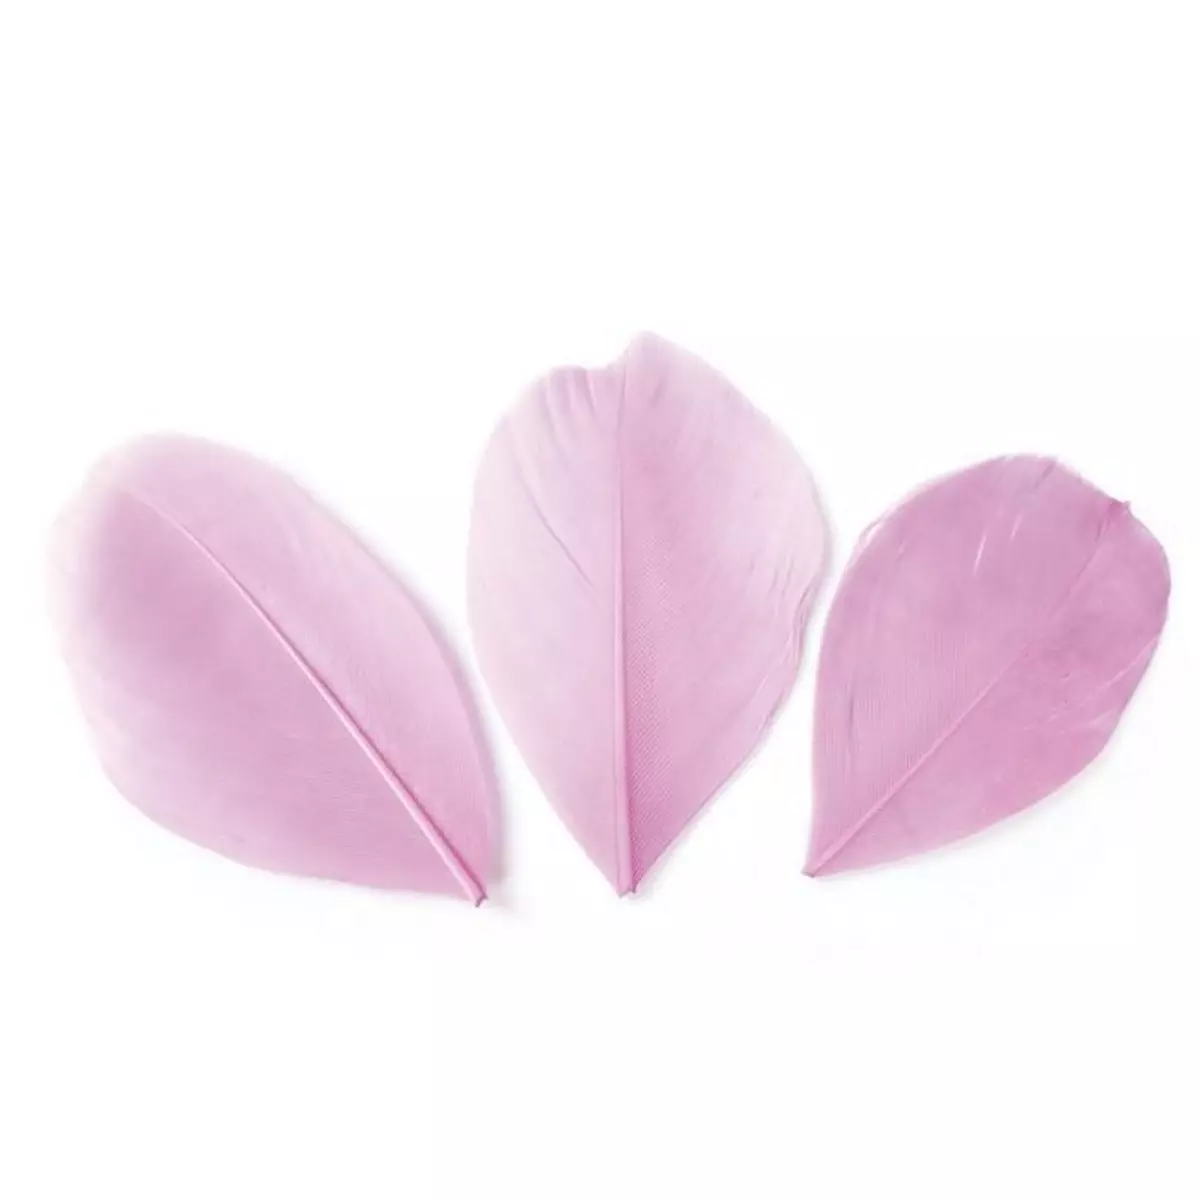 Graine créative 50 plumes coupées - Rose pâle 6 cm